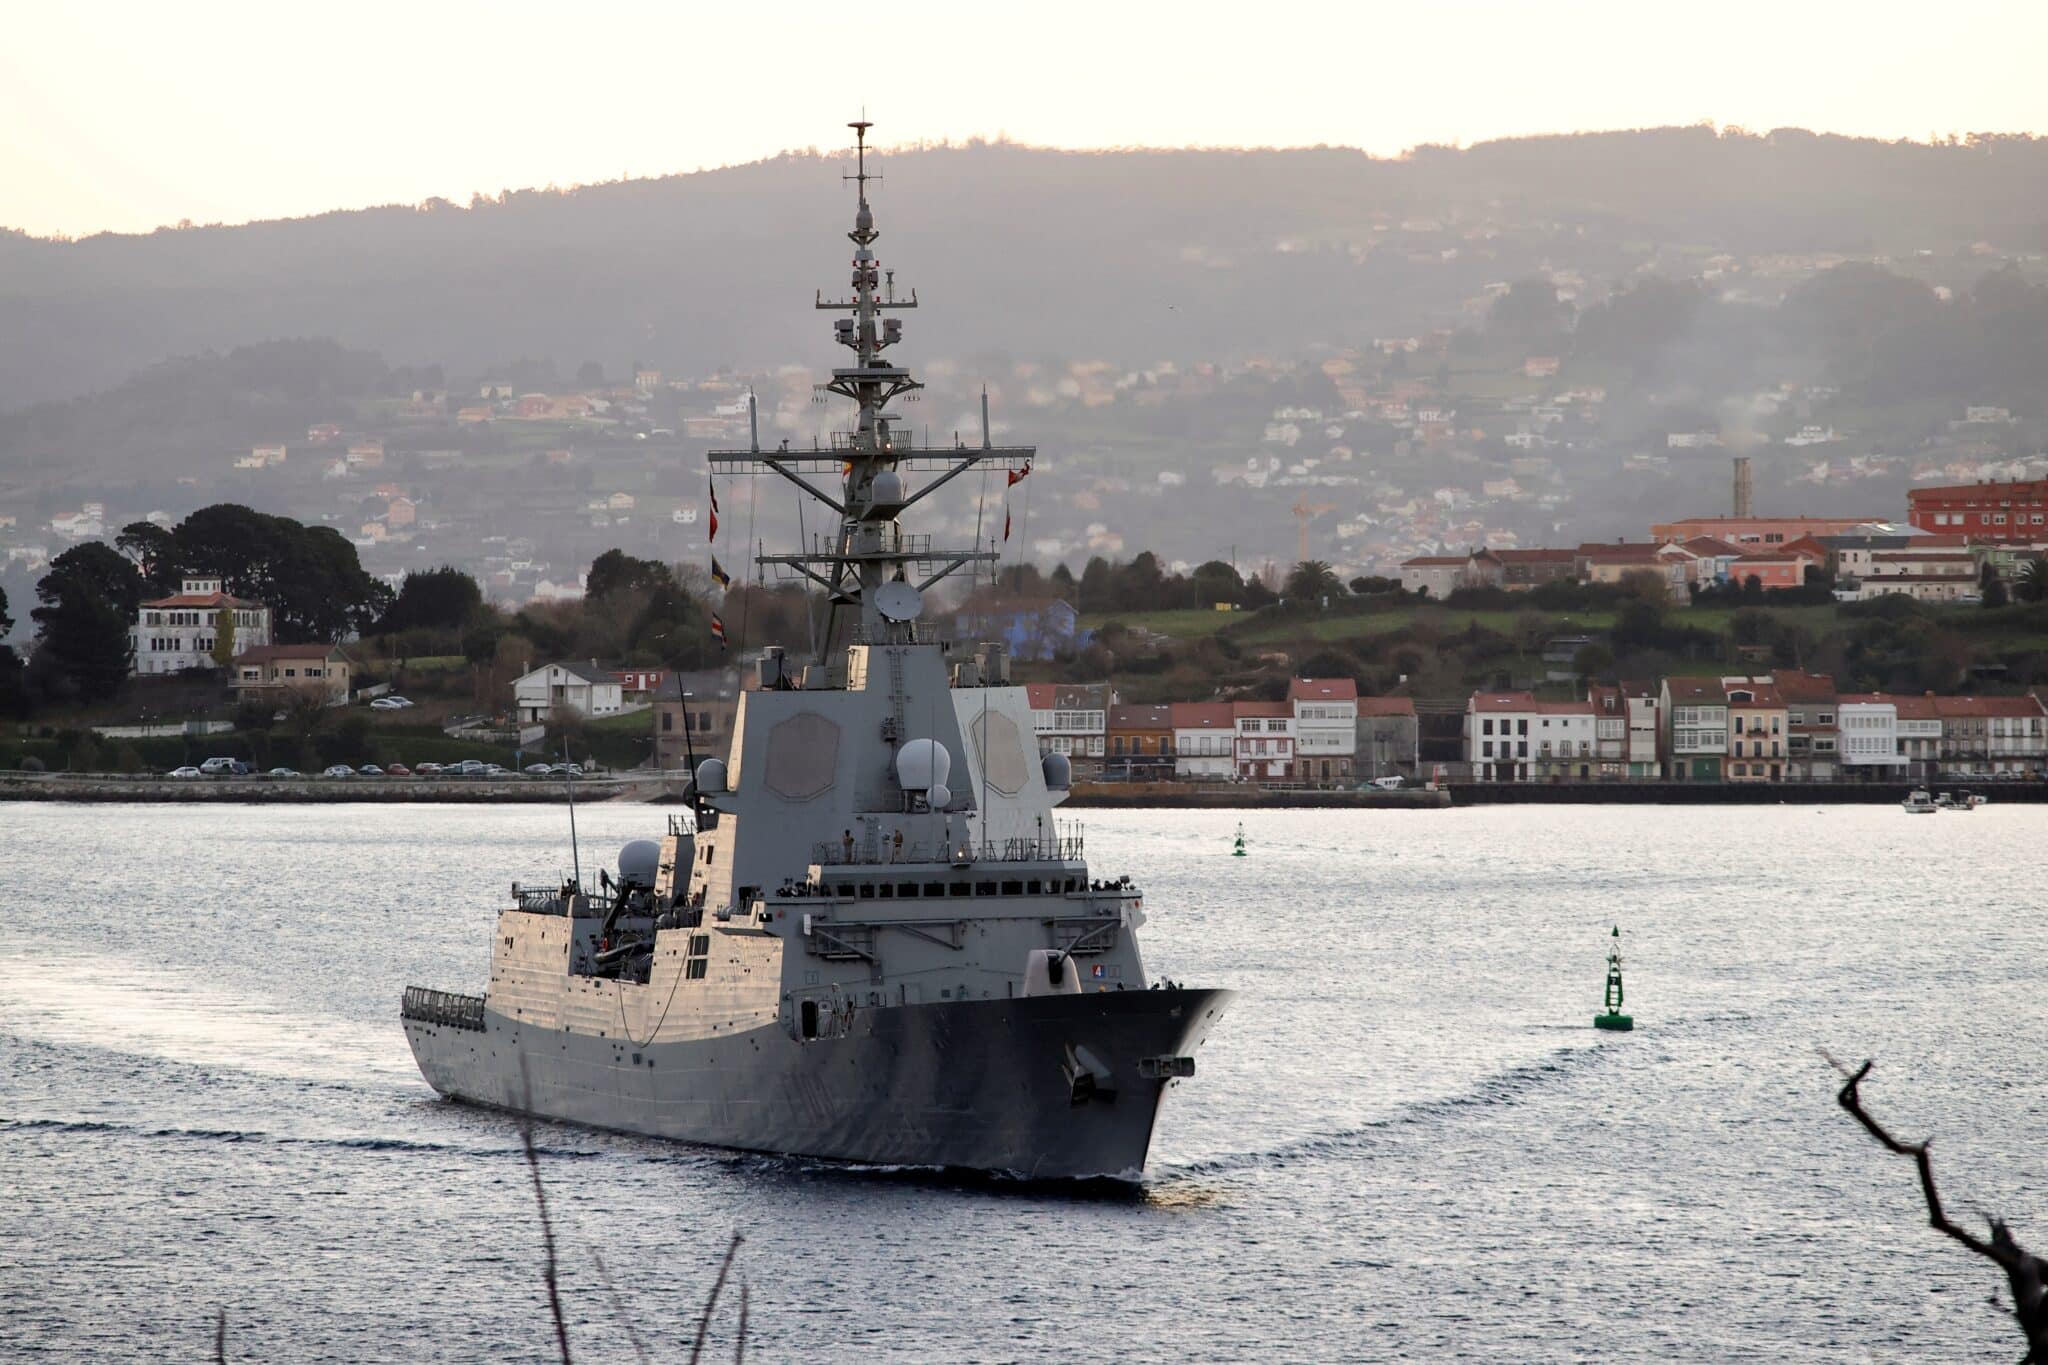 La fragata Blas de Lezo zarpa del Arsenal Militar de Ferrol para dirigirse al mar Negro ante la escalada de tensión entre Rusia y Ucrania.